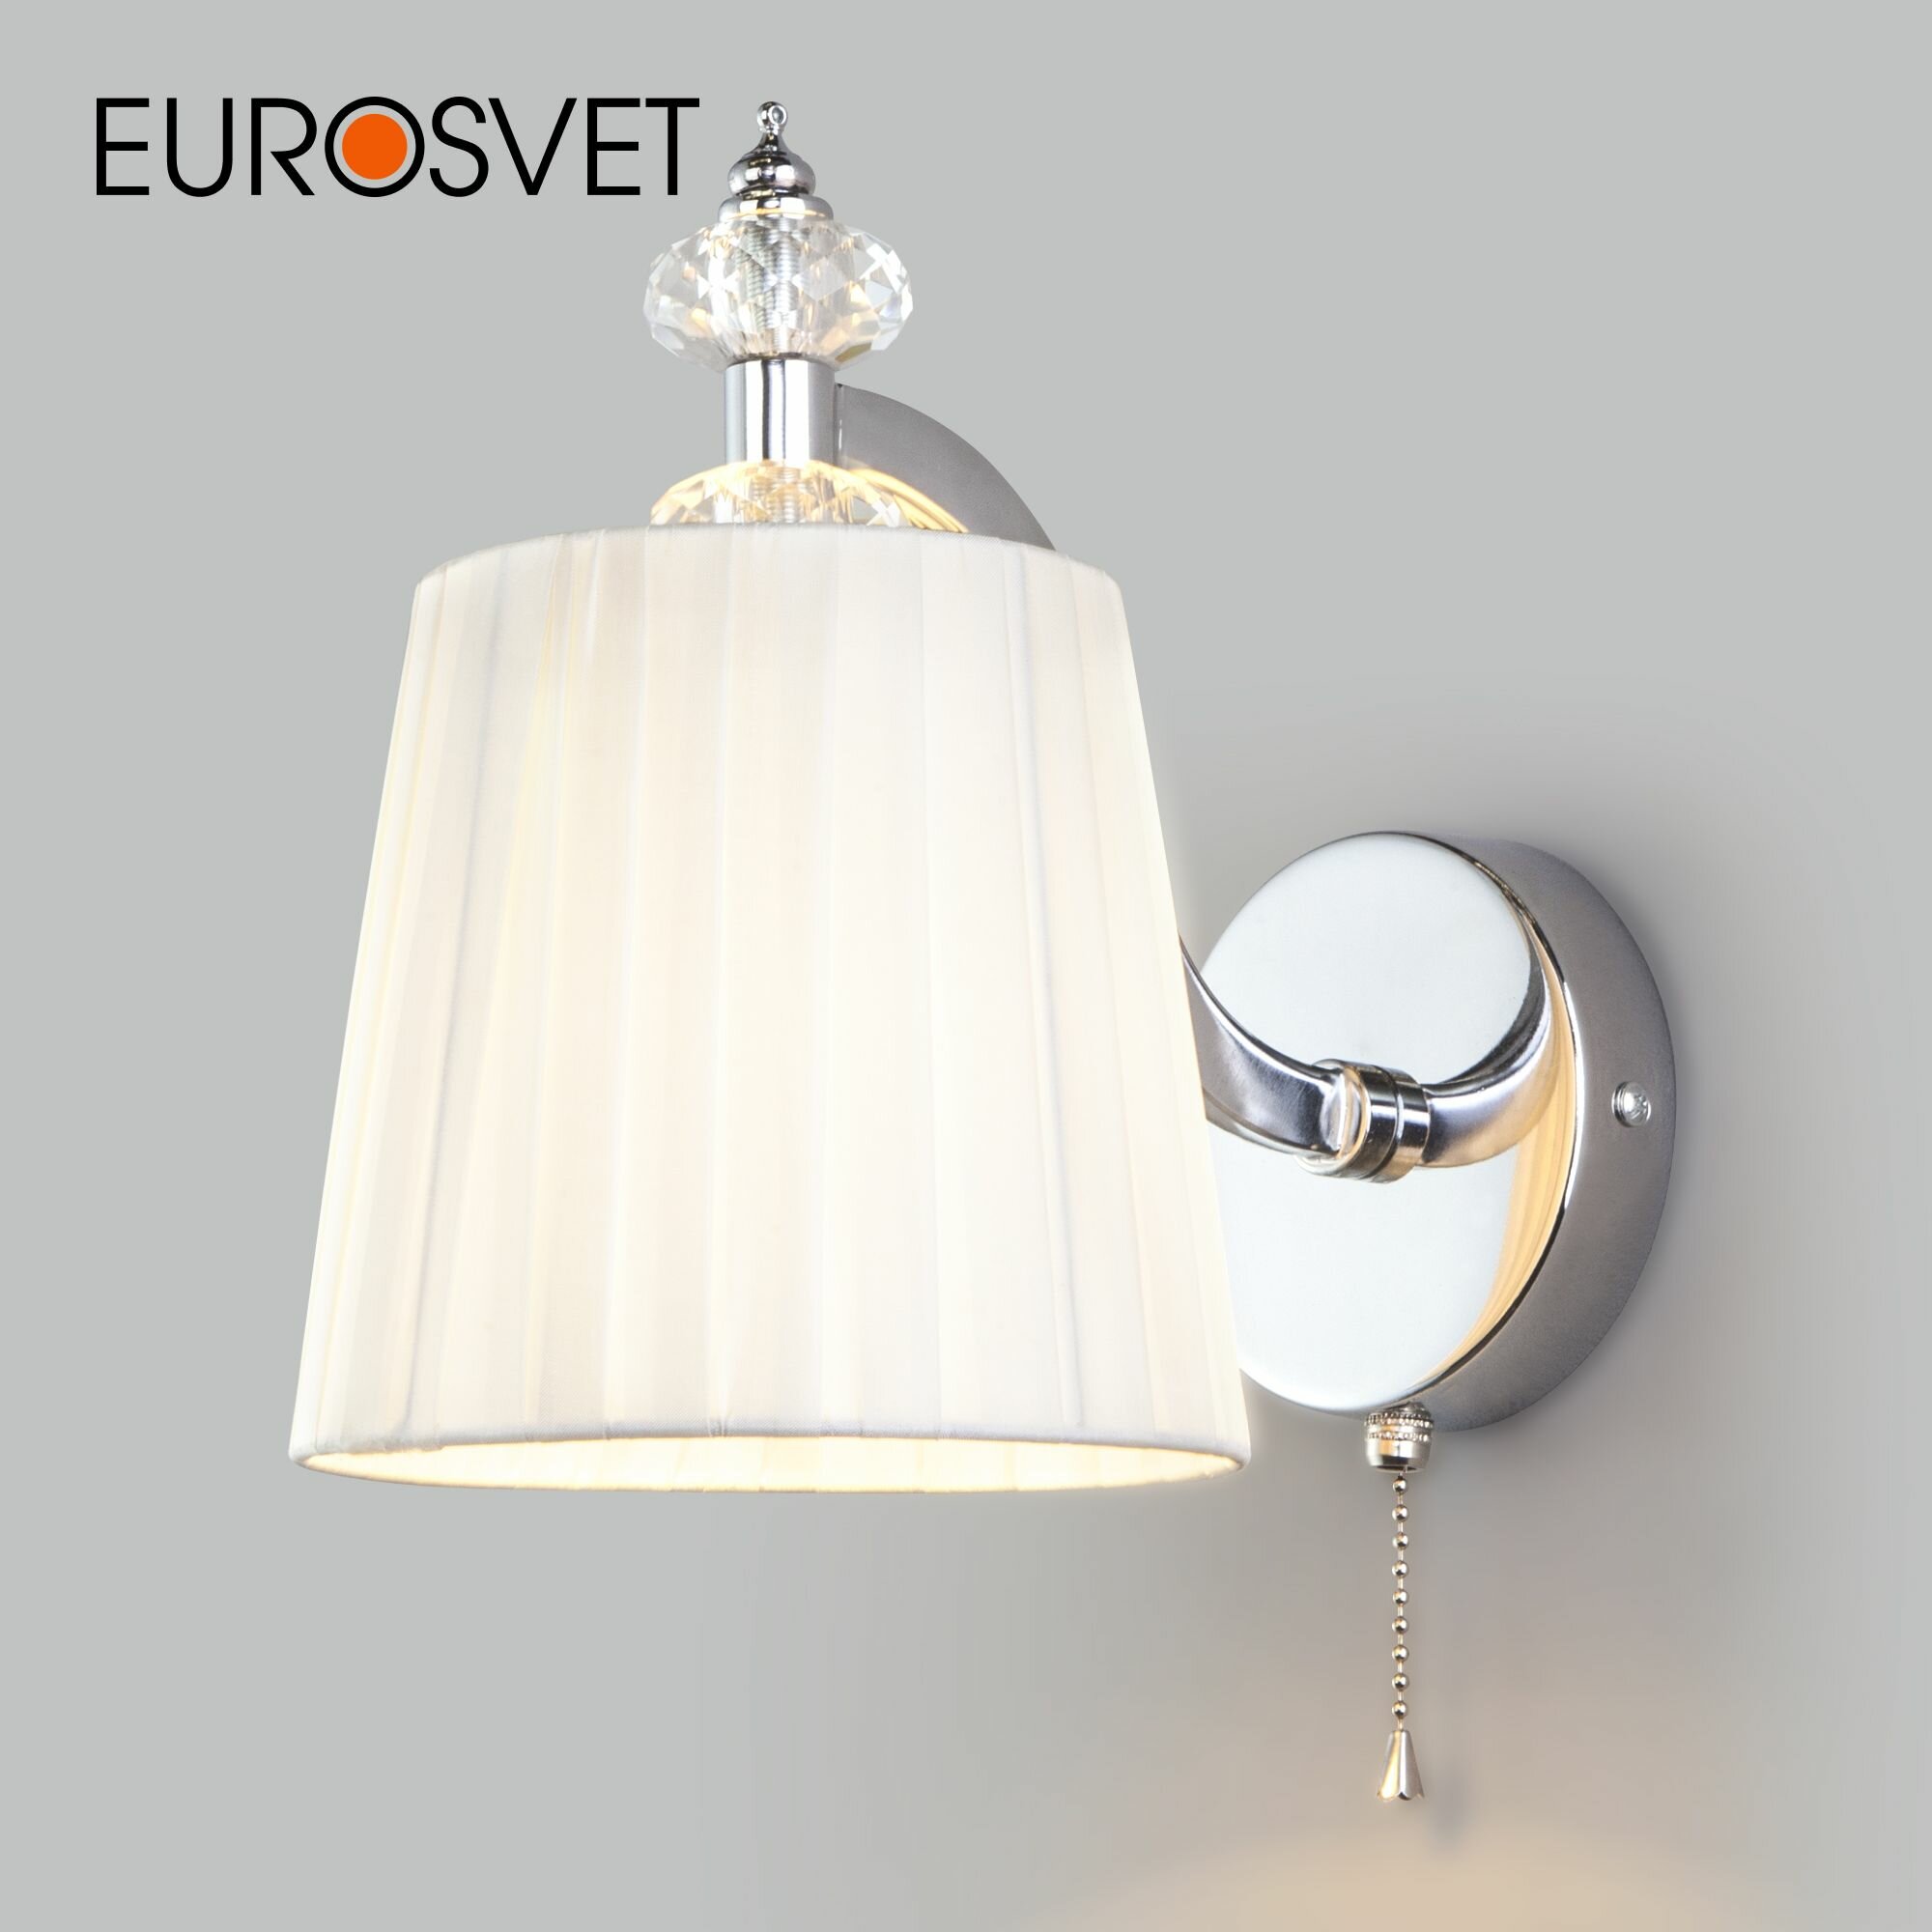 Классический настенный светильник Eurosvet 60122/1 хром